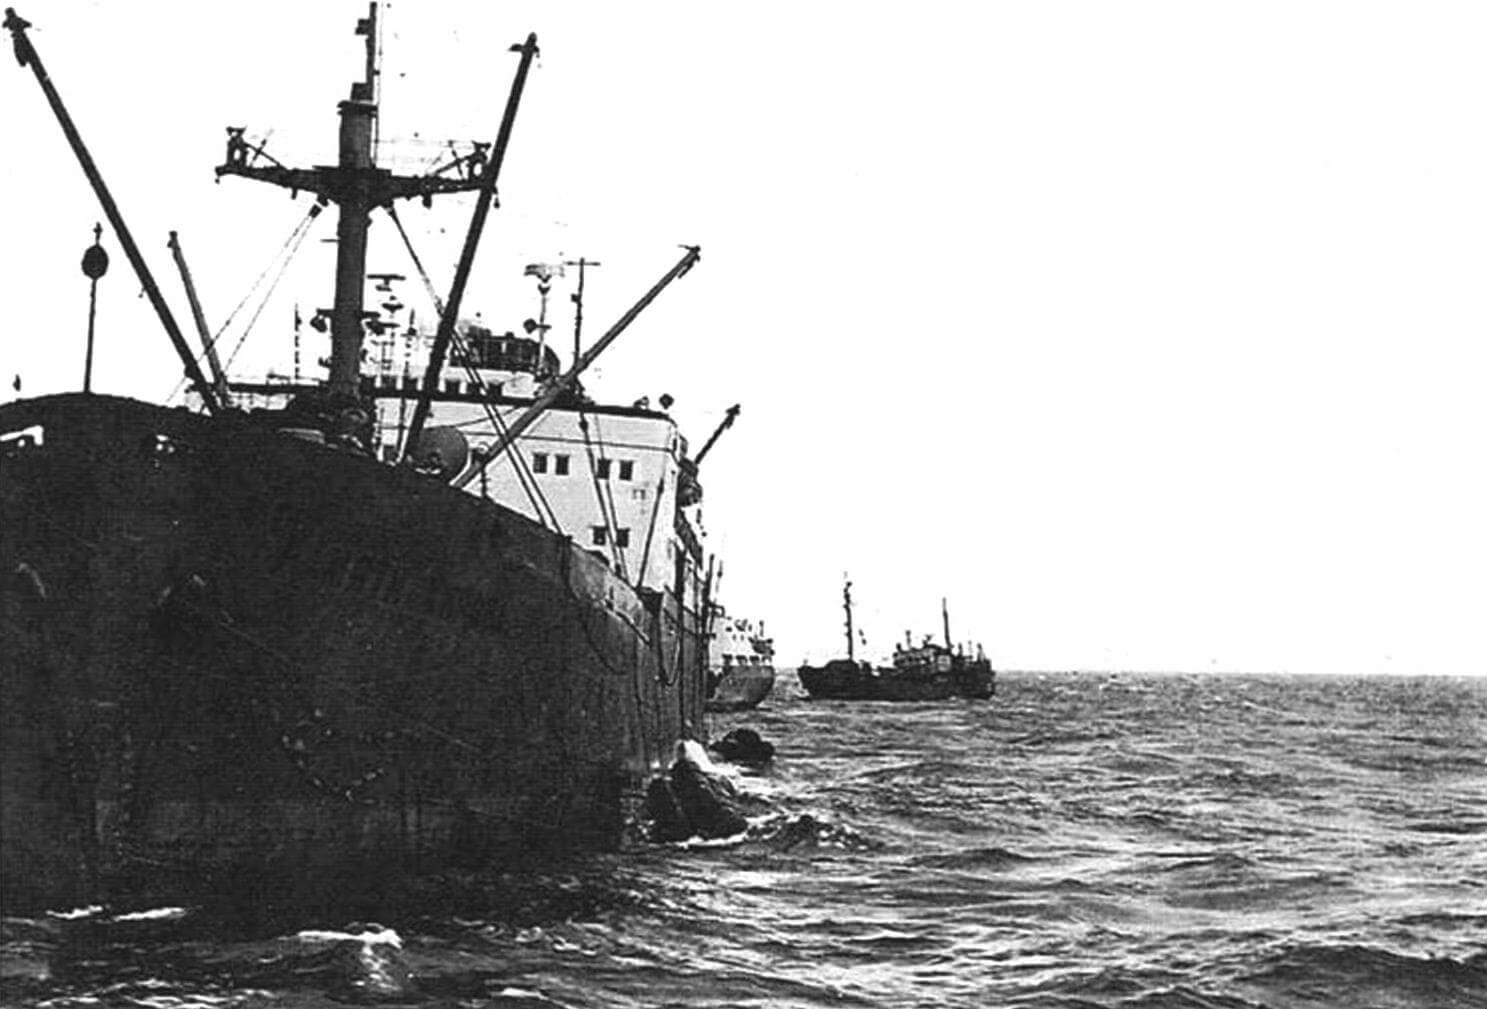 Транспортно-снабженческое судно «Памяти Кирова» - бывший американский пароход «Horace Bushnell», восстановленный через пять лет после торпедирования